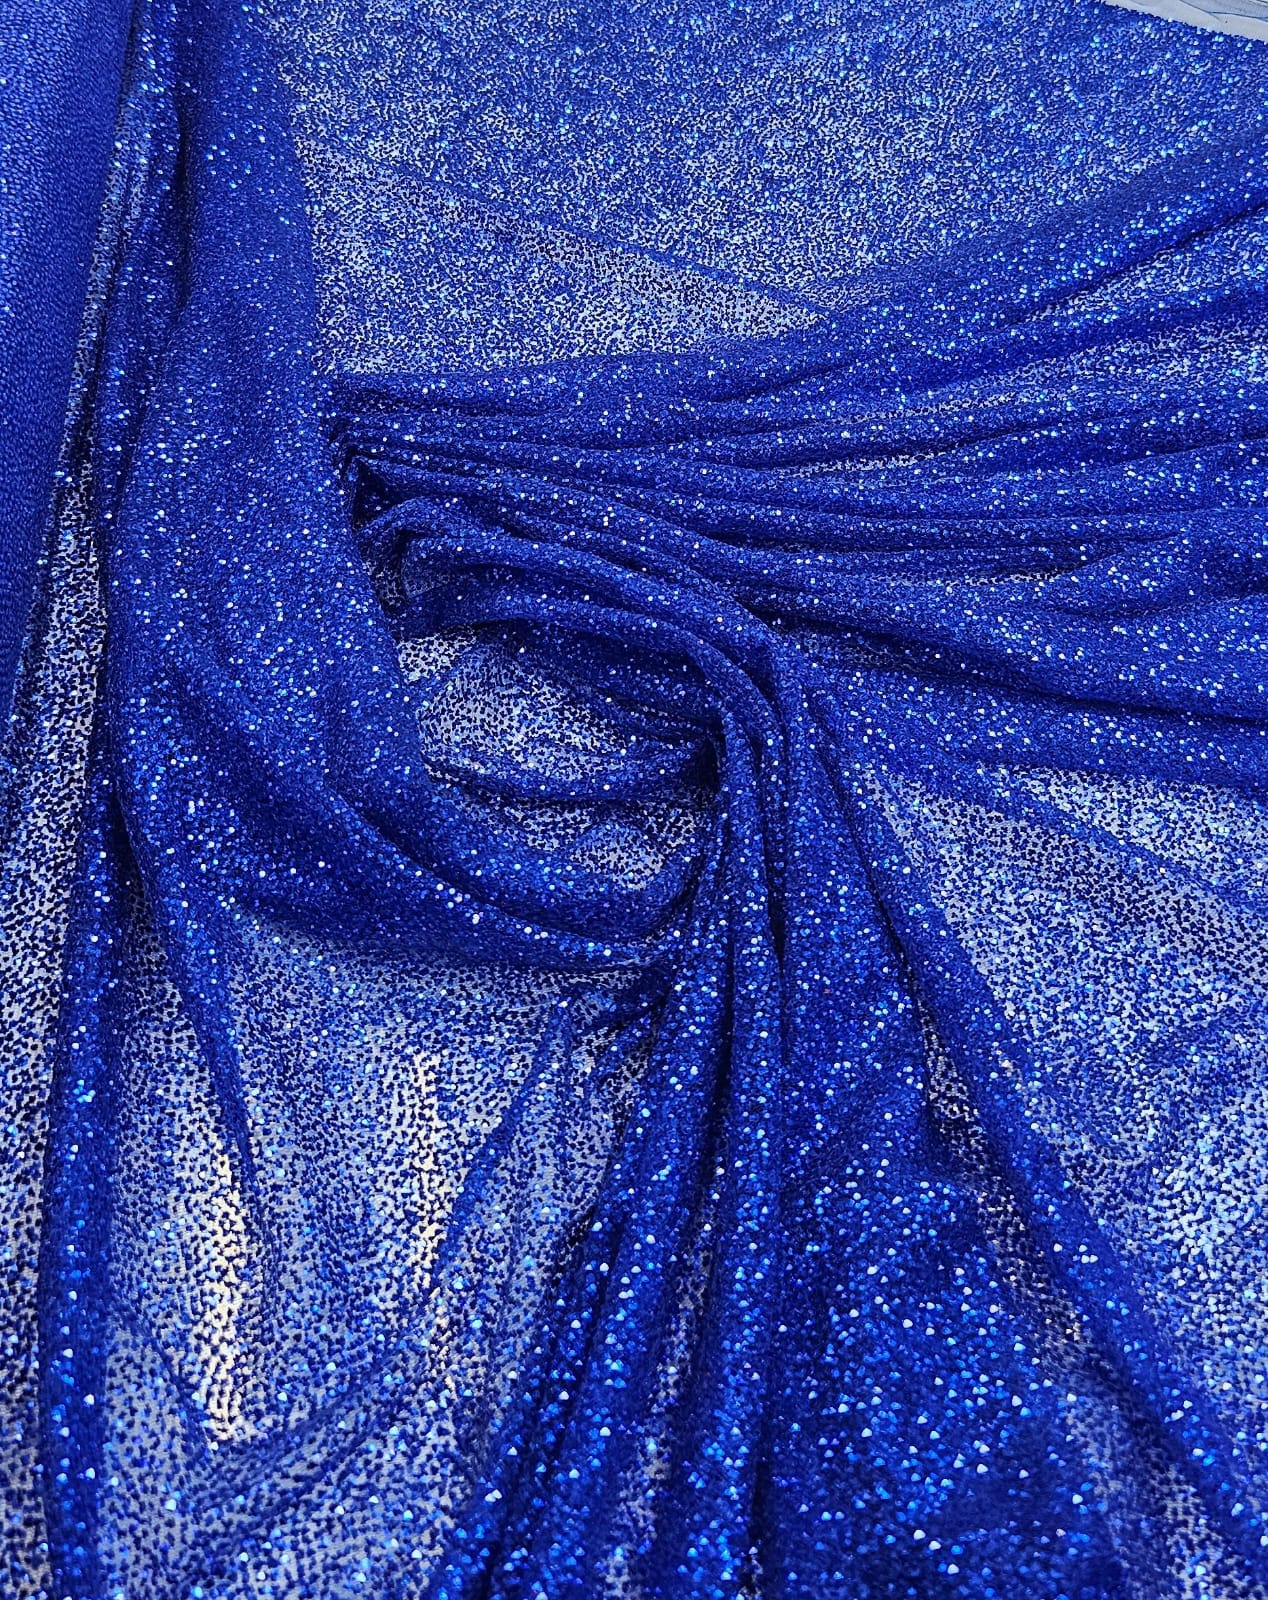 Tule com Glitter Azul Royal Pesado - Largura 1,40 m Comprimento 1,50 m 